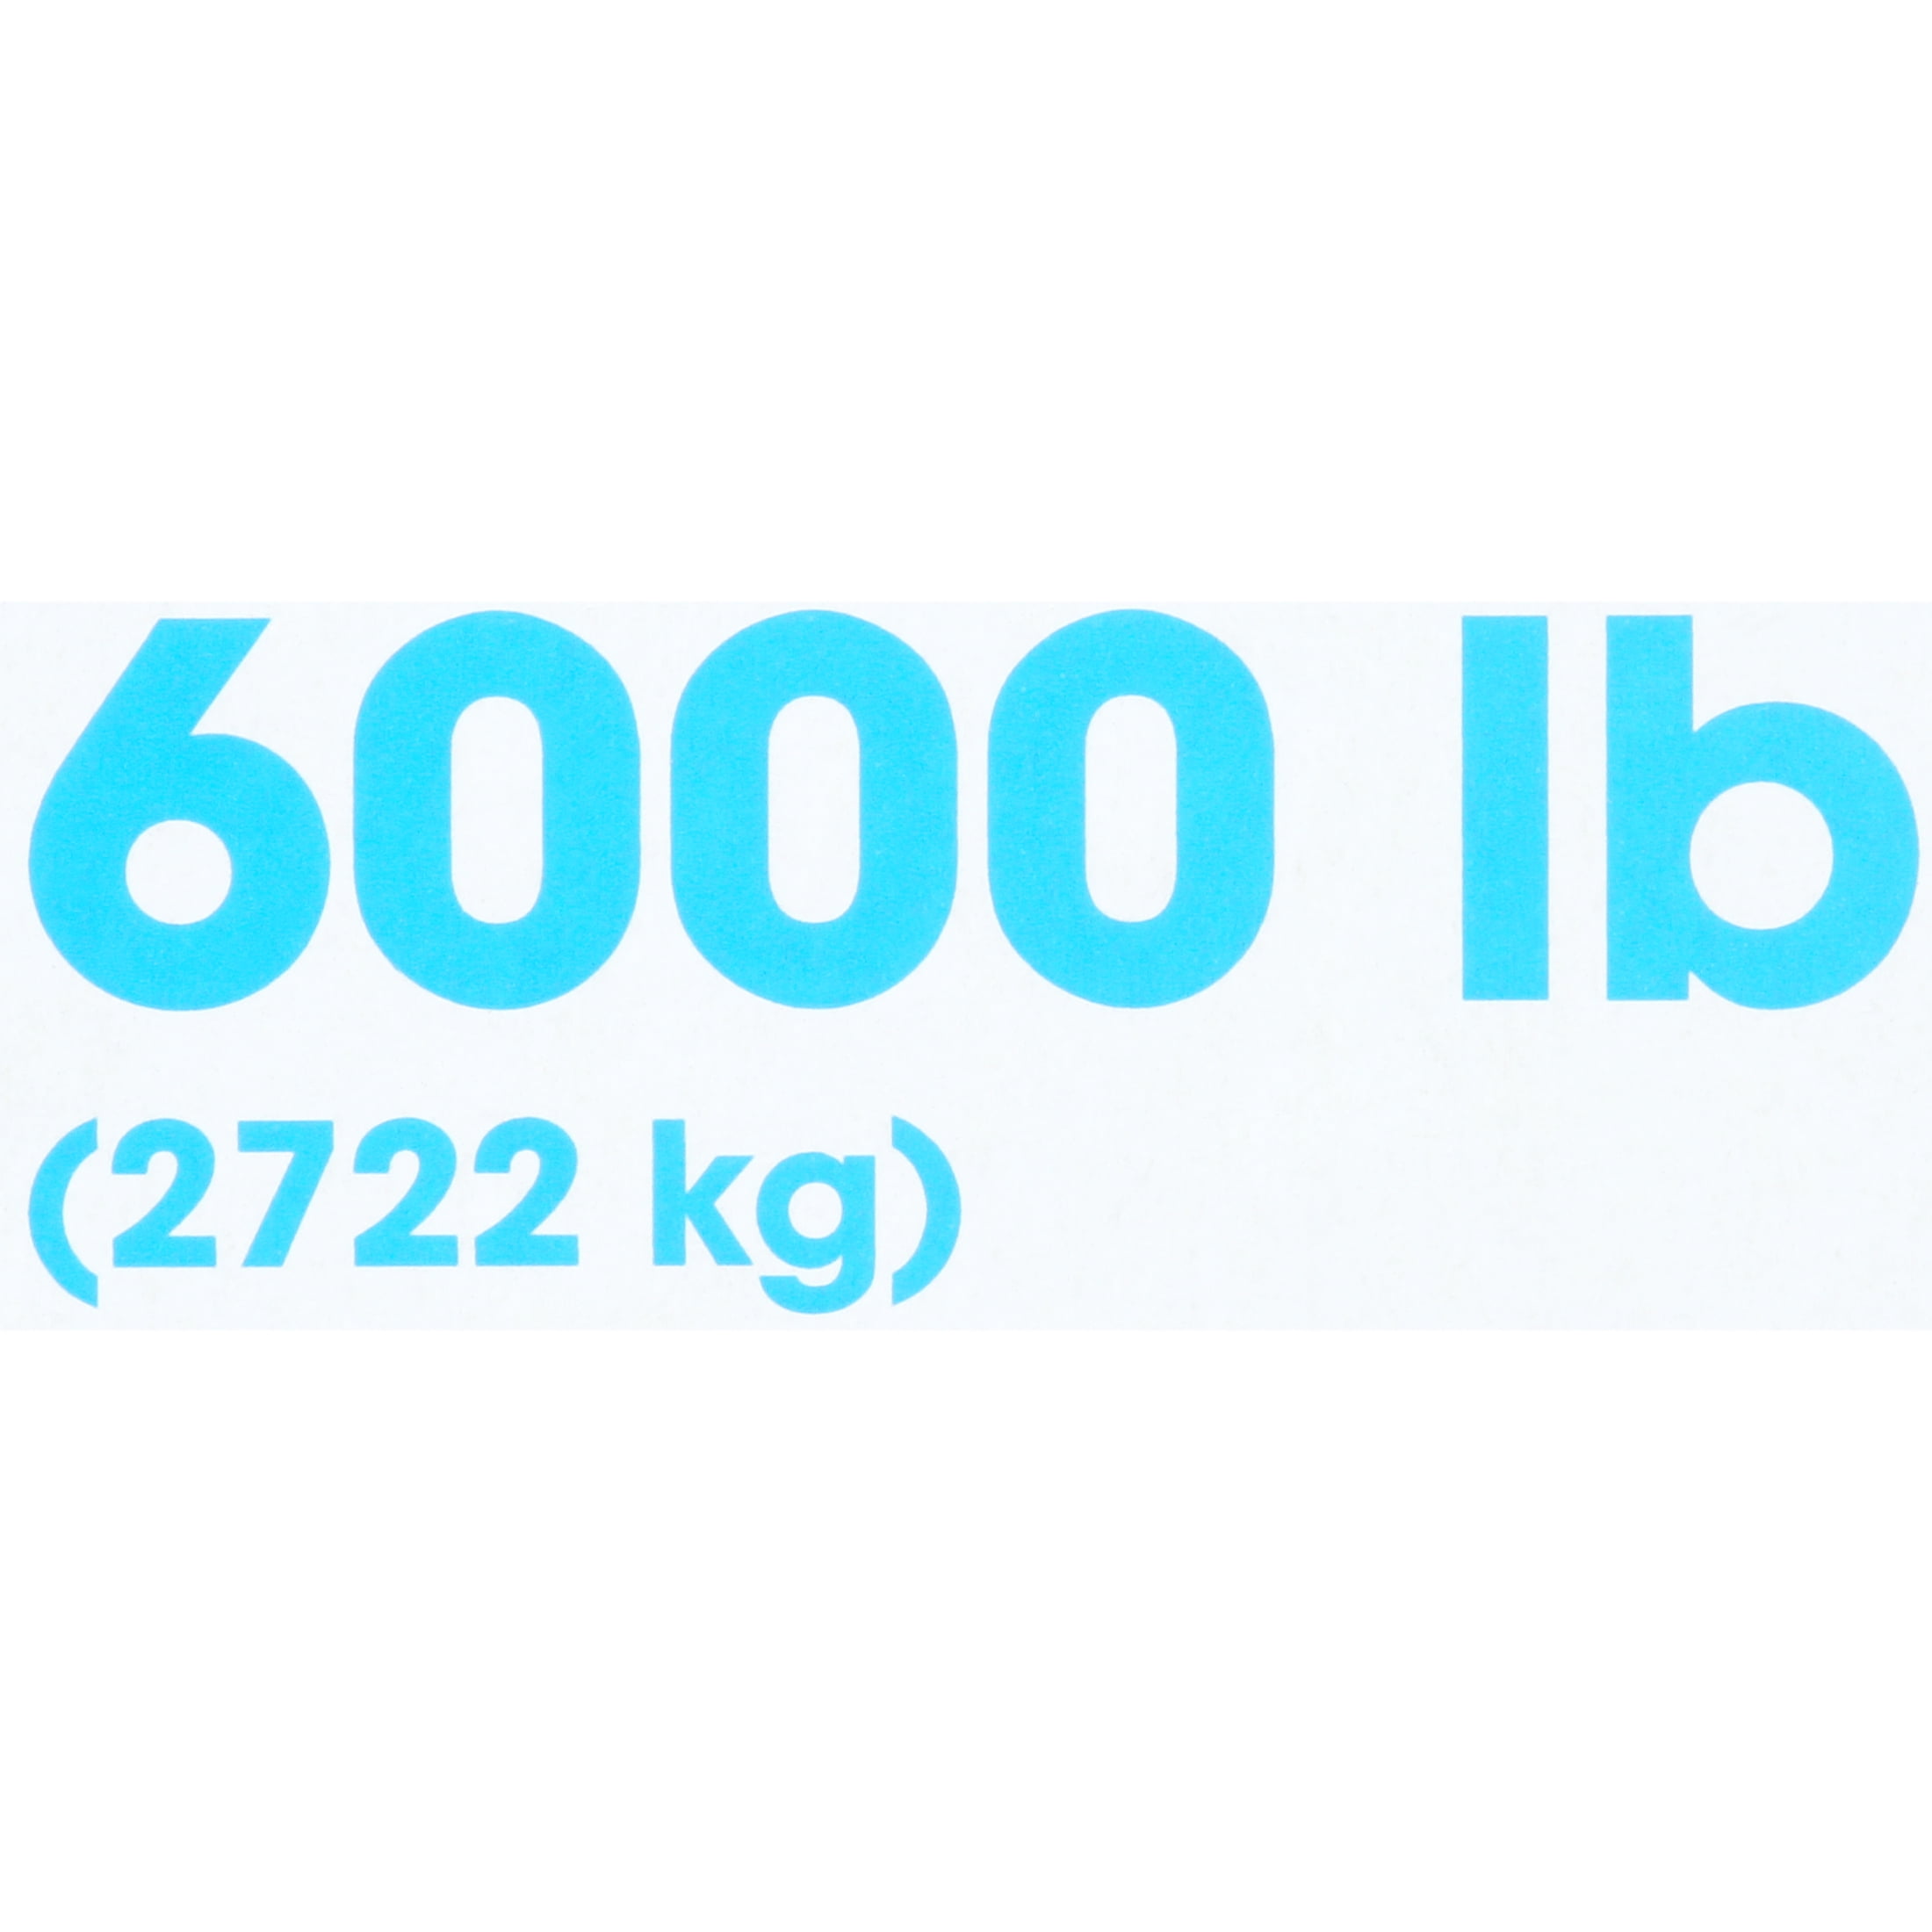 6000 pound to kg